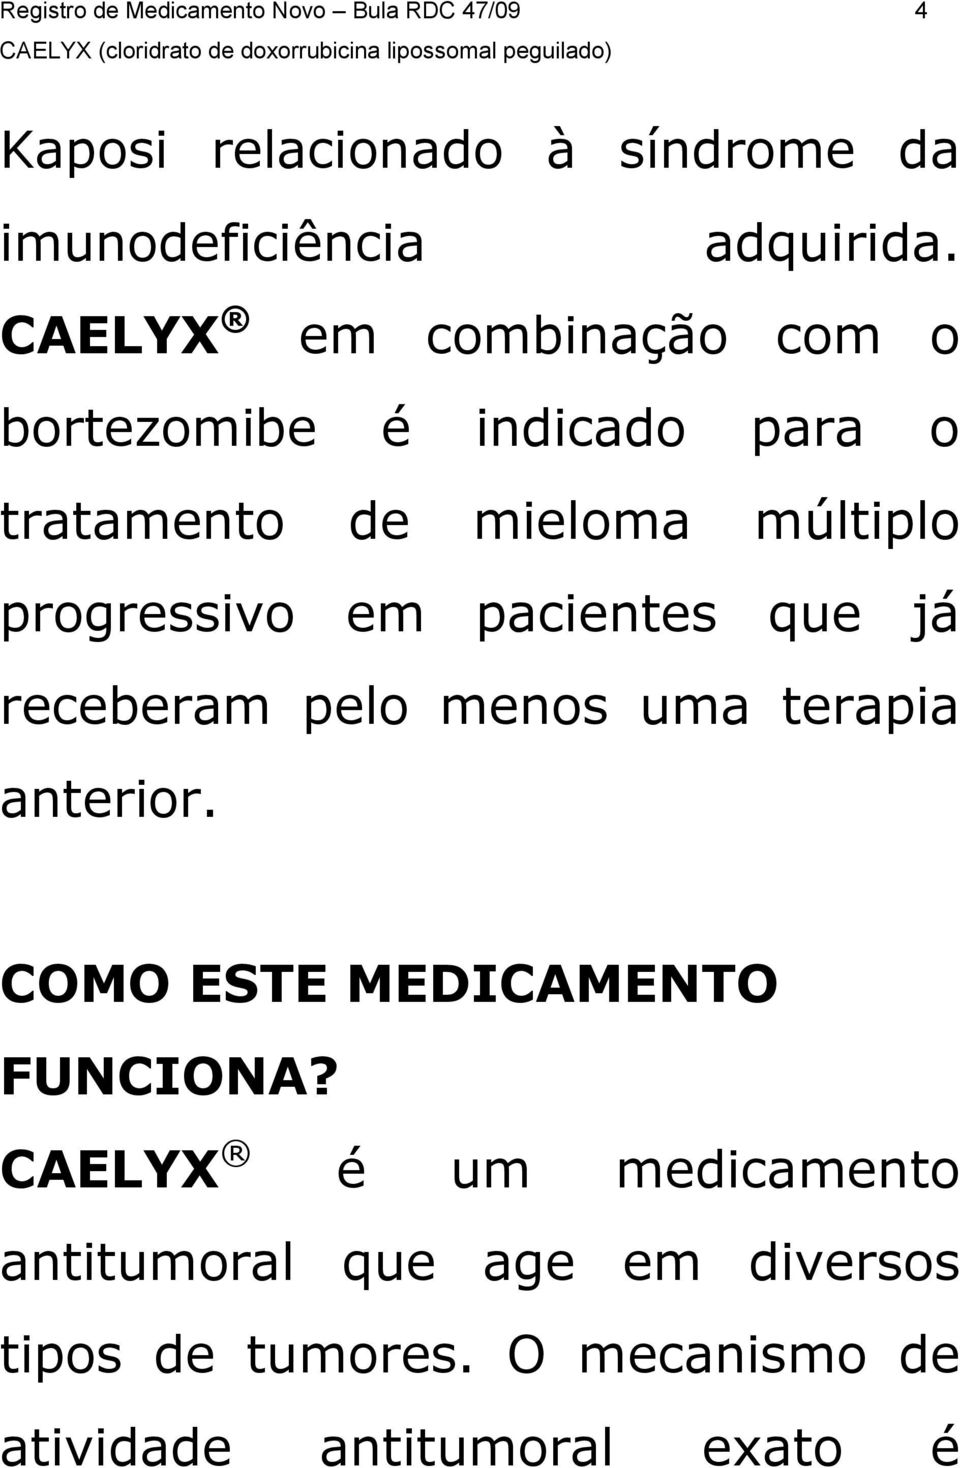 CAELYX em combinação com o bortezomibe é indicado para o tratamento de mieloma múltiplo progressivo em